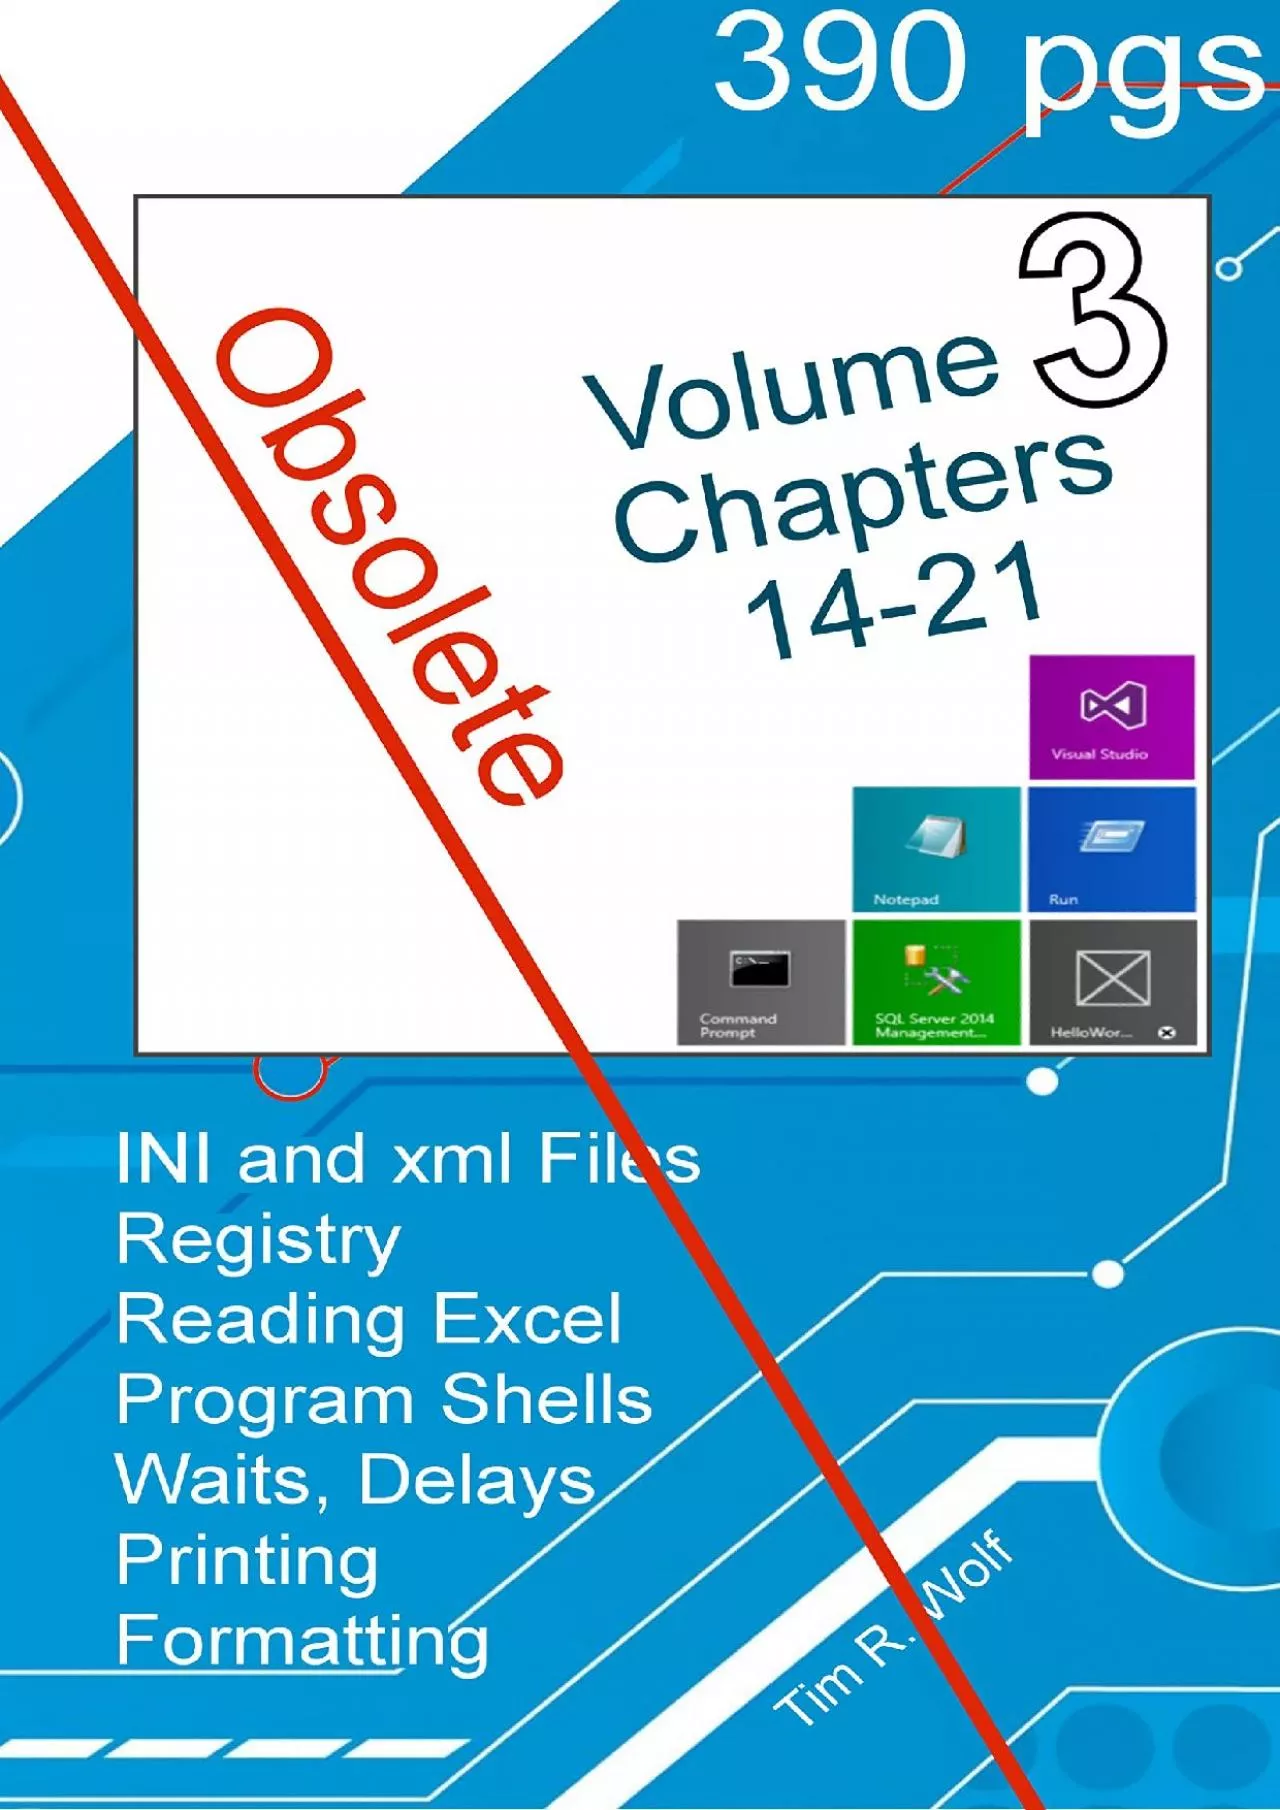 [PDF]-War and Peace - Programming C 3 Vol.: INI File, XML, Registry, Shells, Wait States,